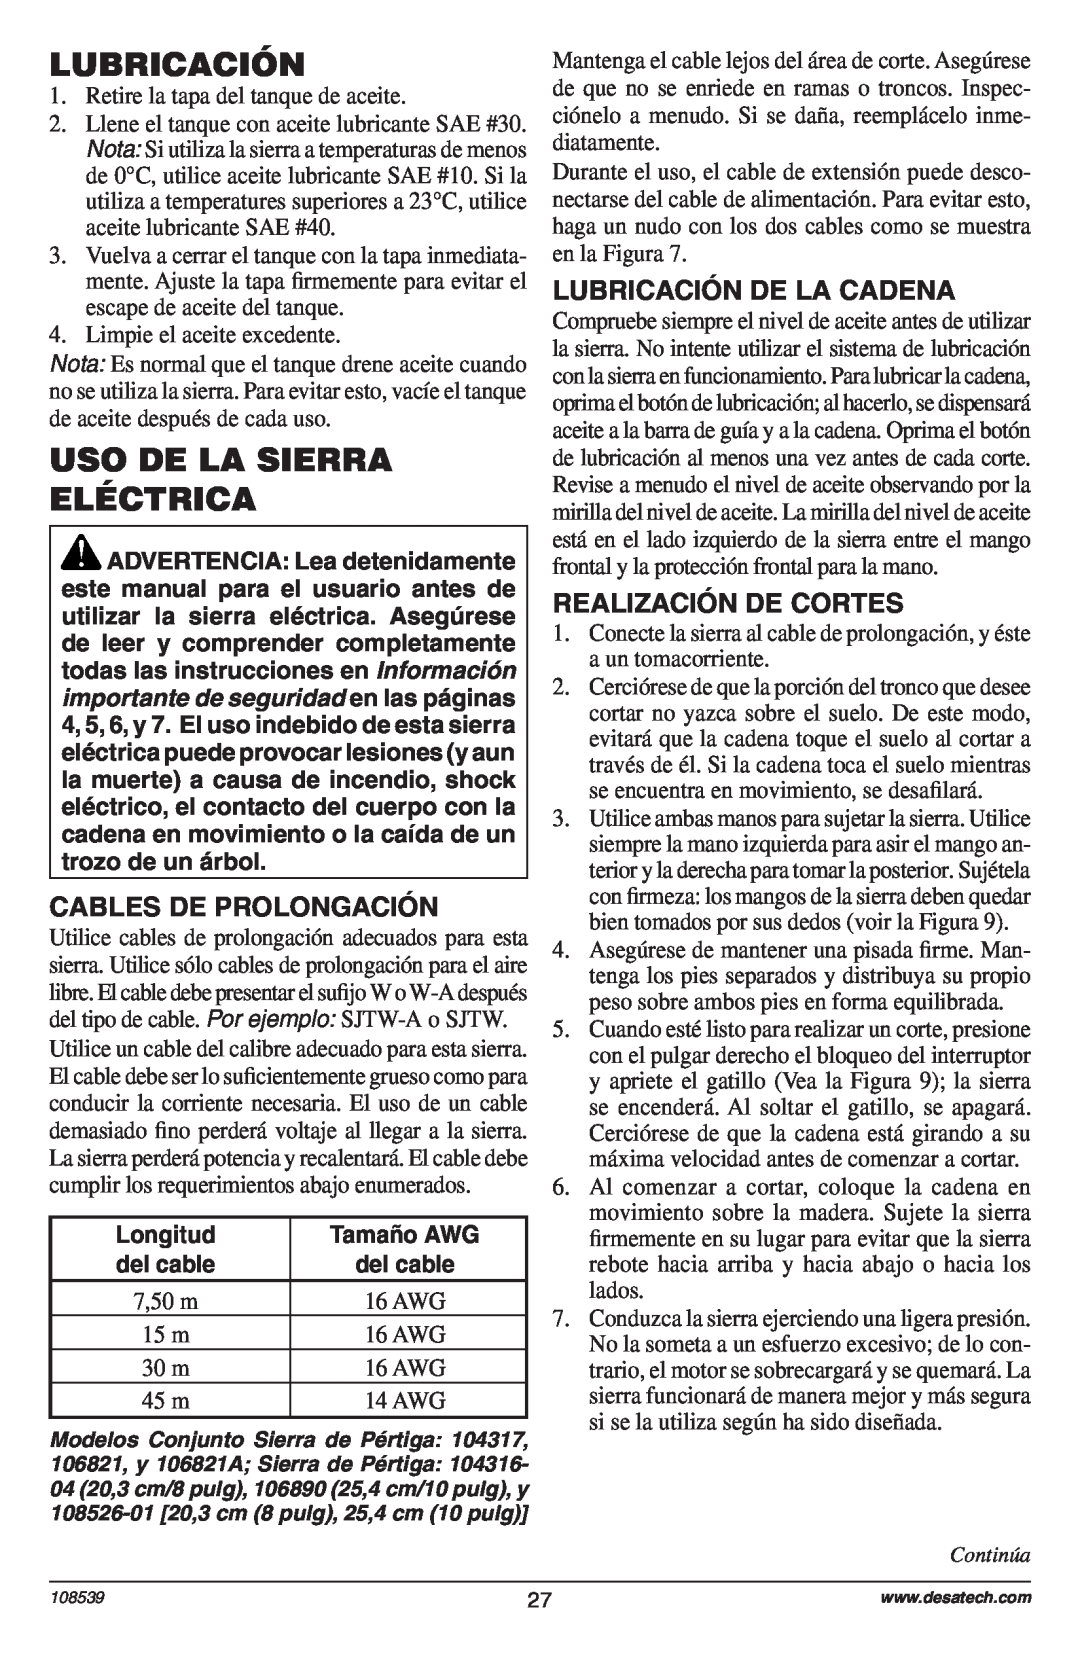 Remington 104316-04,106890-01, 108526-01, 104317, 106821, 106821A owner manual Lubricación, Uso De La Sierra Eléctrica 